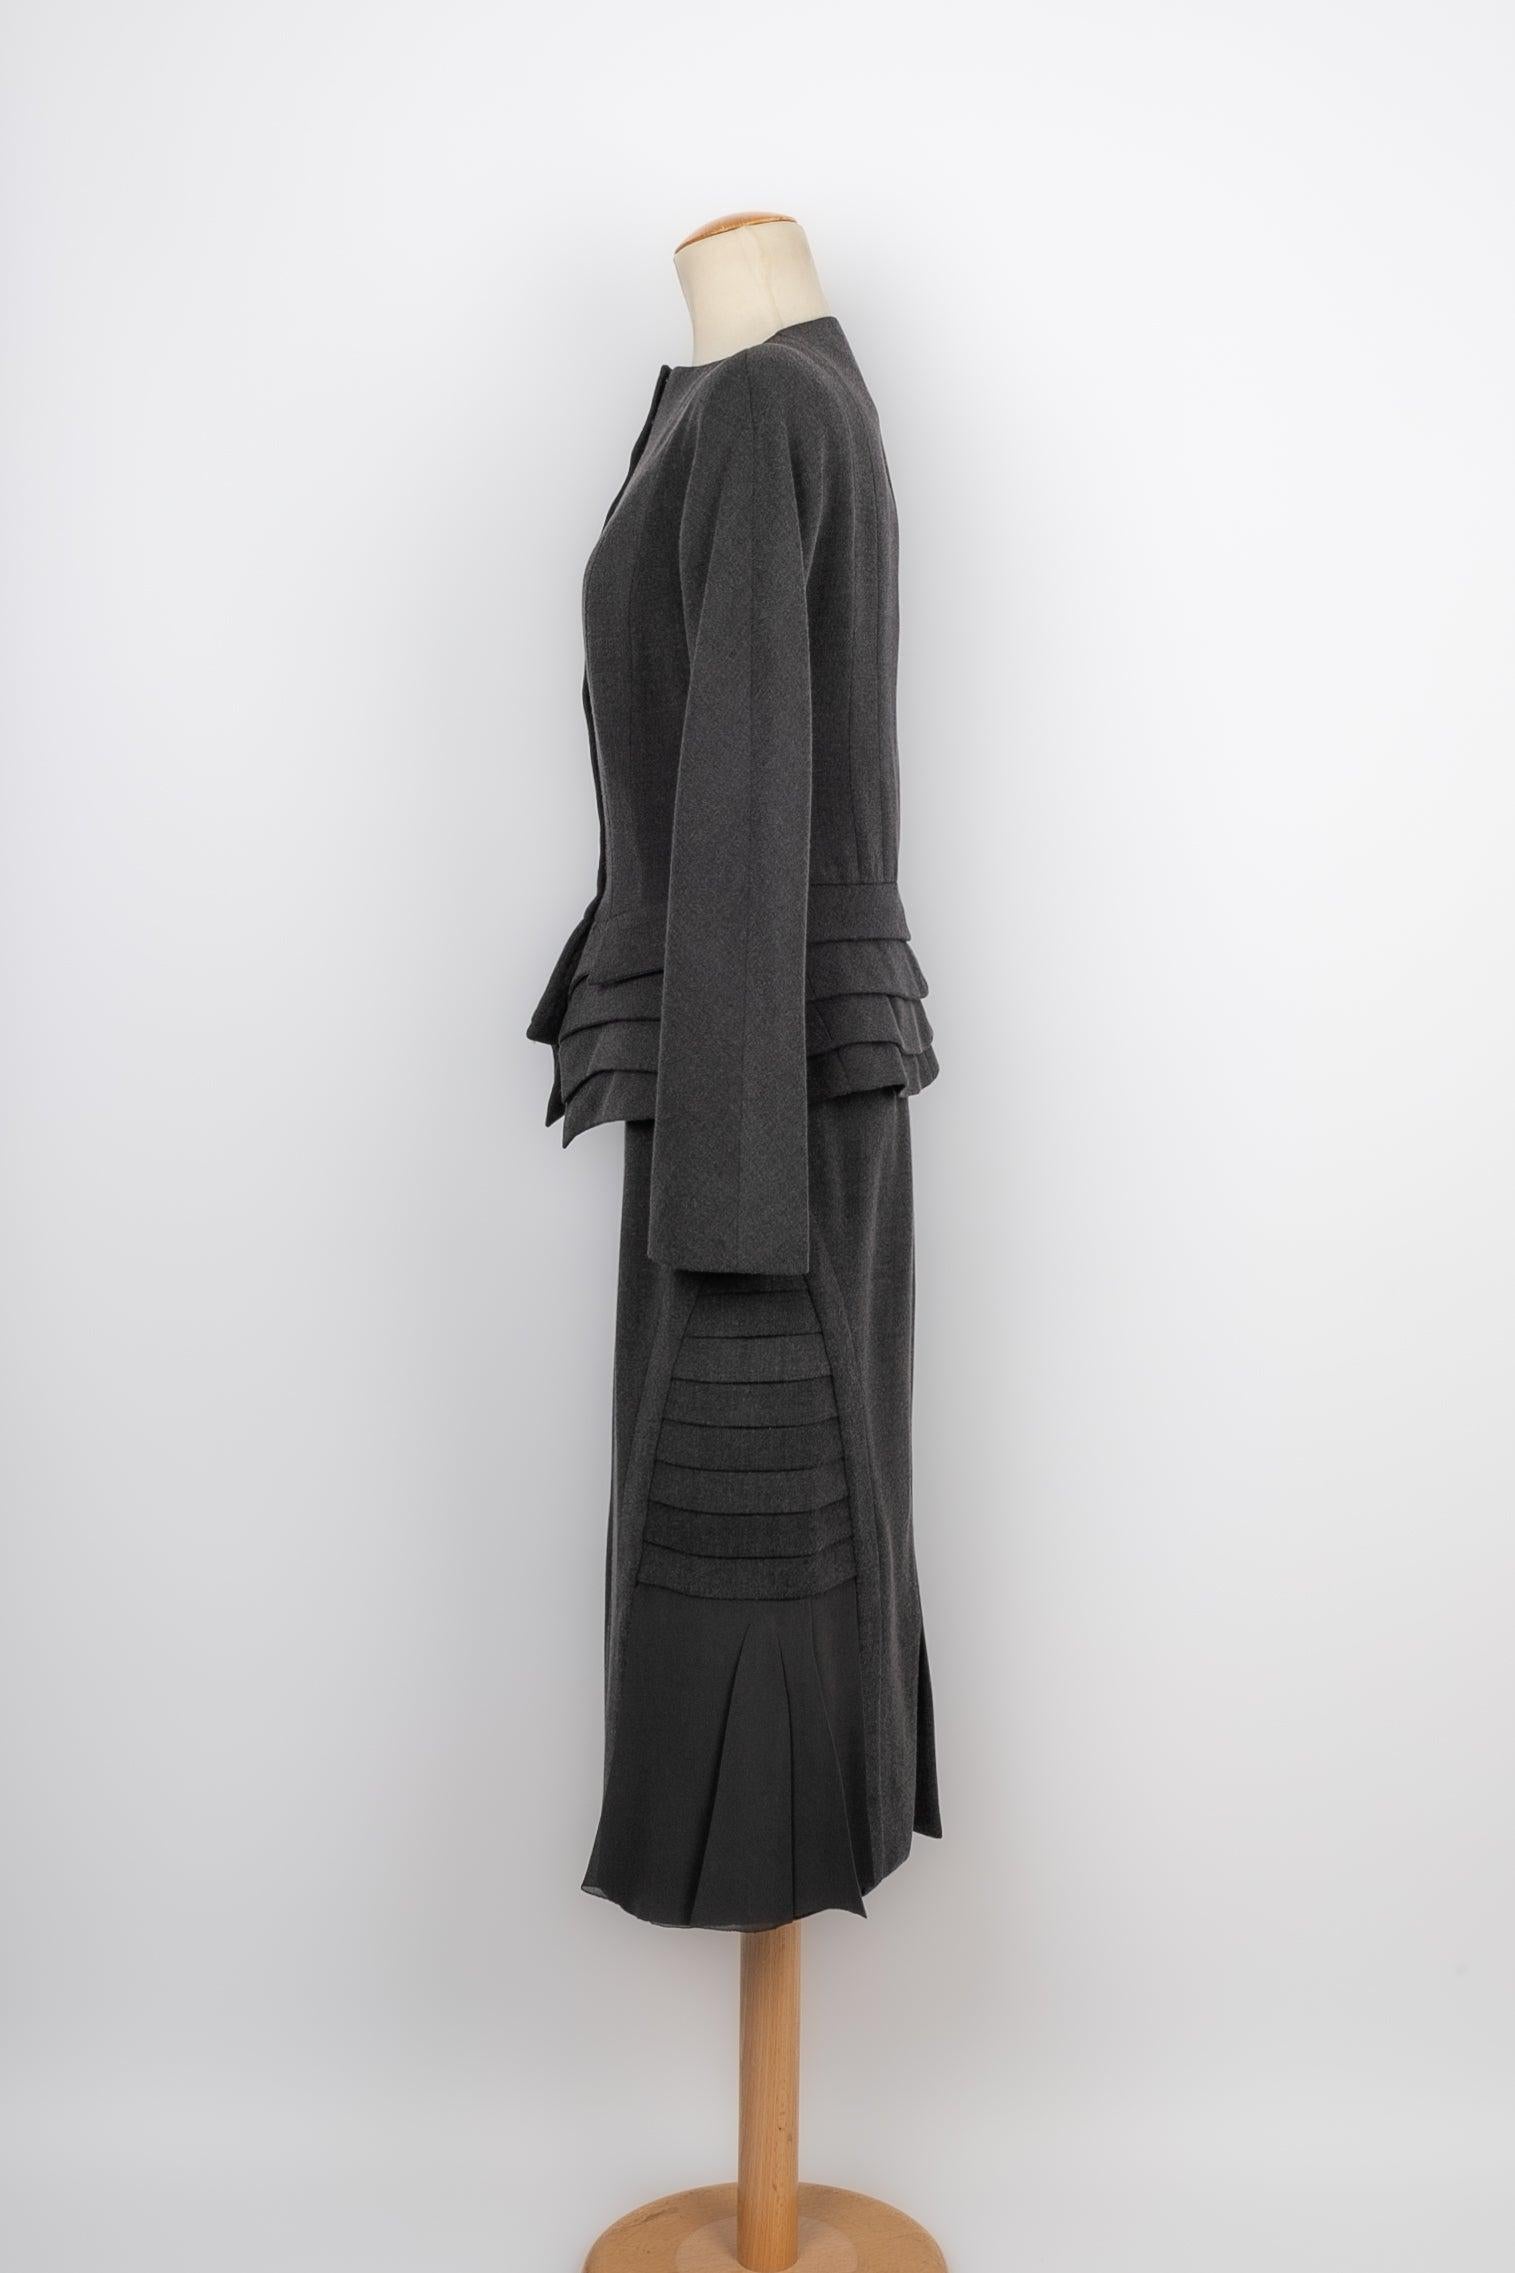 Dior- Haute Couture Set aus Seide und Wolle, bestehend aus einem Rock und einer Jacke. Keine Größenangabe, es passt eine 34FR.

Zusätzliche Informationen:
Zustand: Sehr guter Zustand
Abmessungen: Jacke: Schulterbreite: 37 cm - Brustkorb: 47 cm -